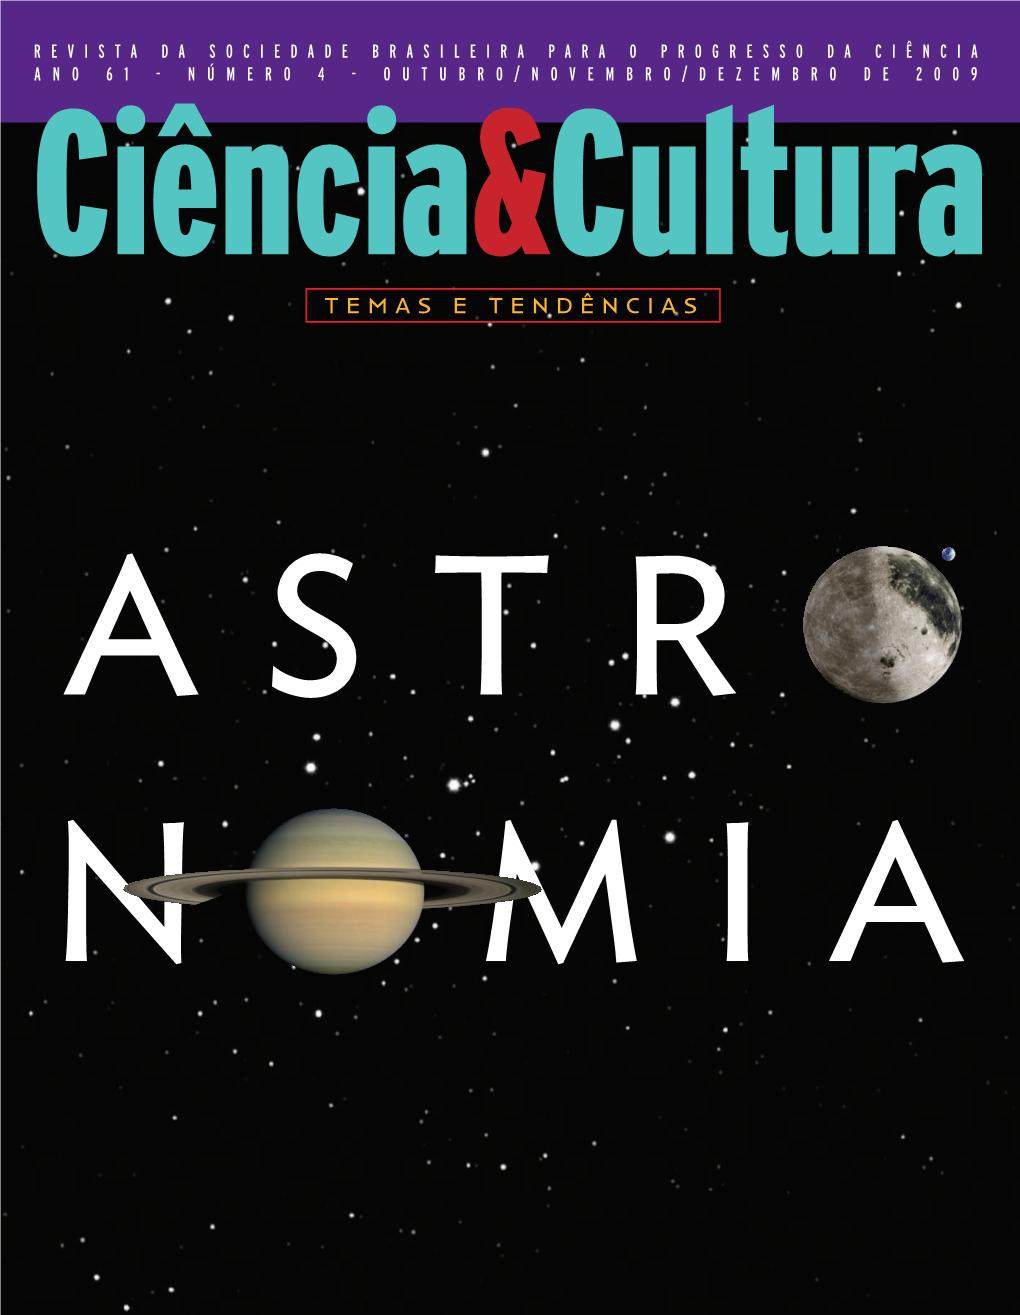 C&C 61 4 Astronomia.Pdf